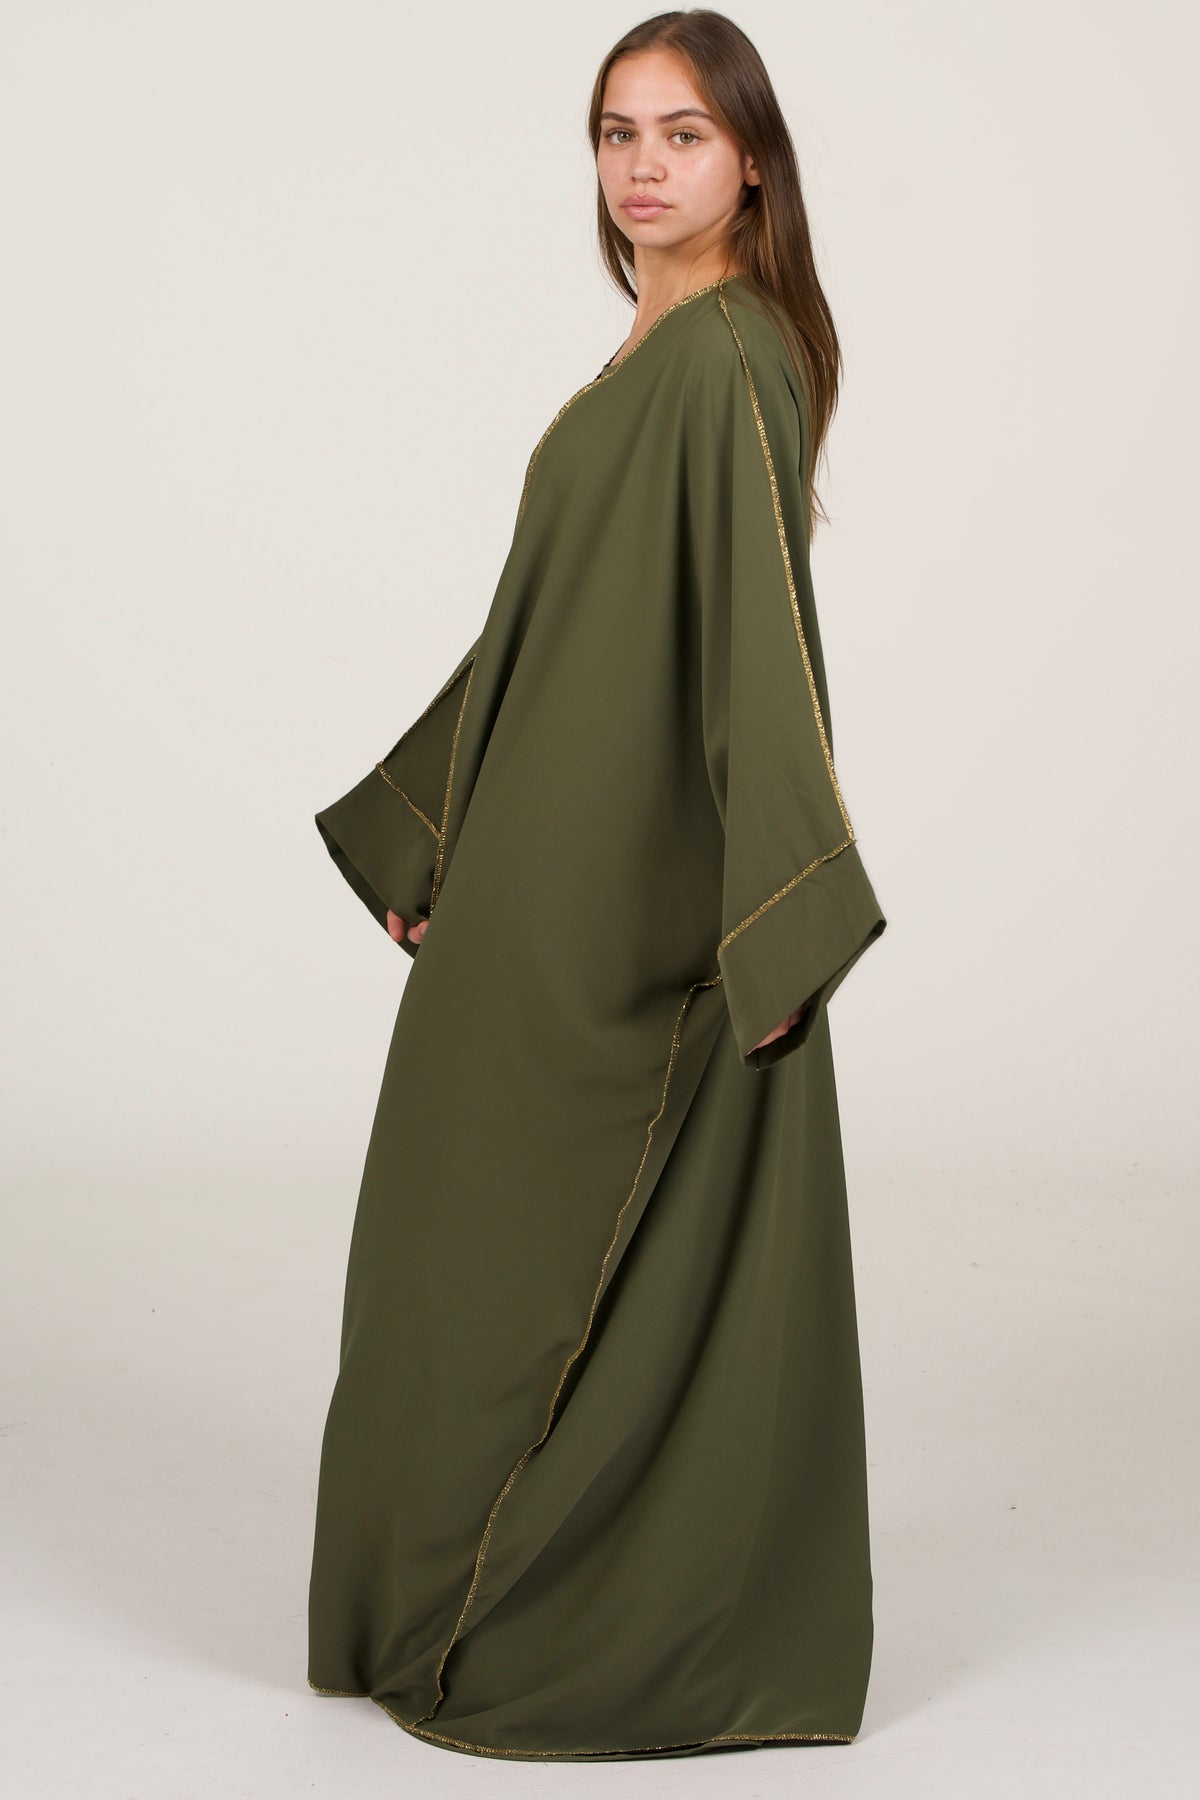 Olive Green Abaya Set Golden Details